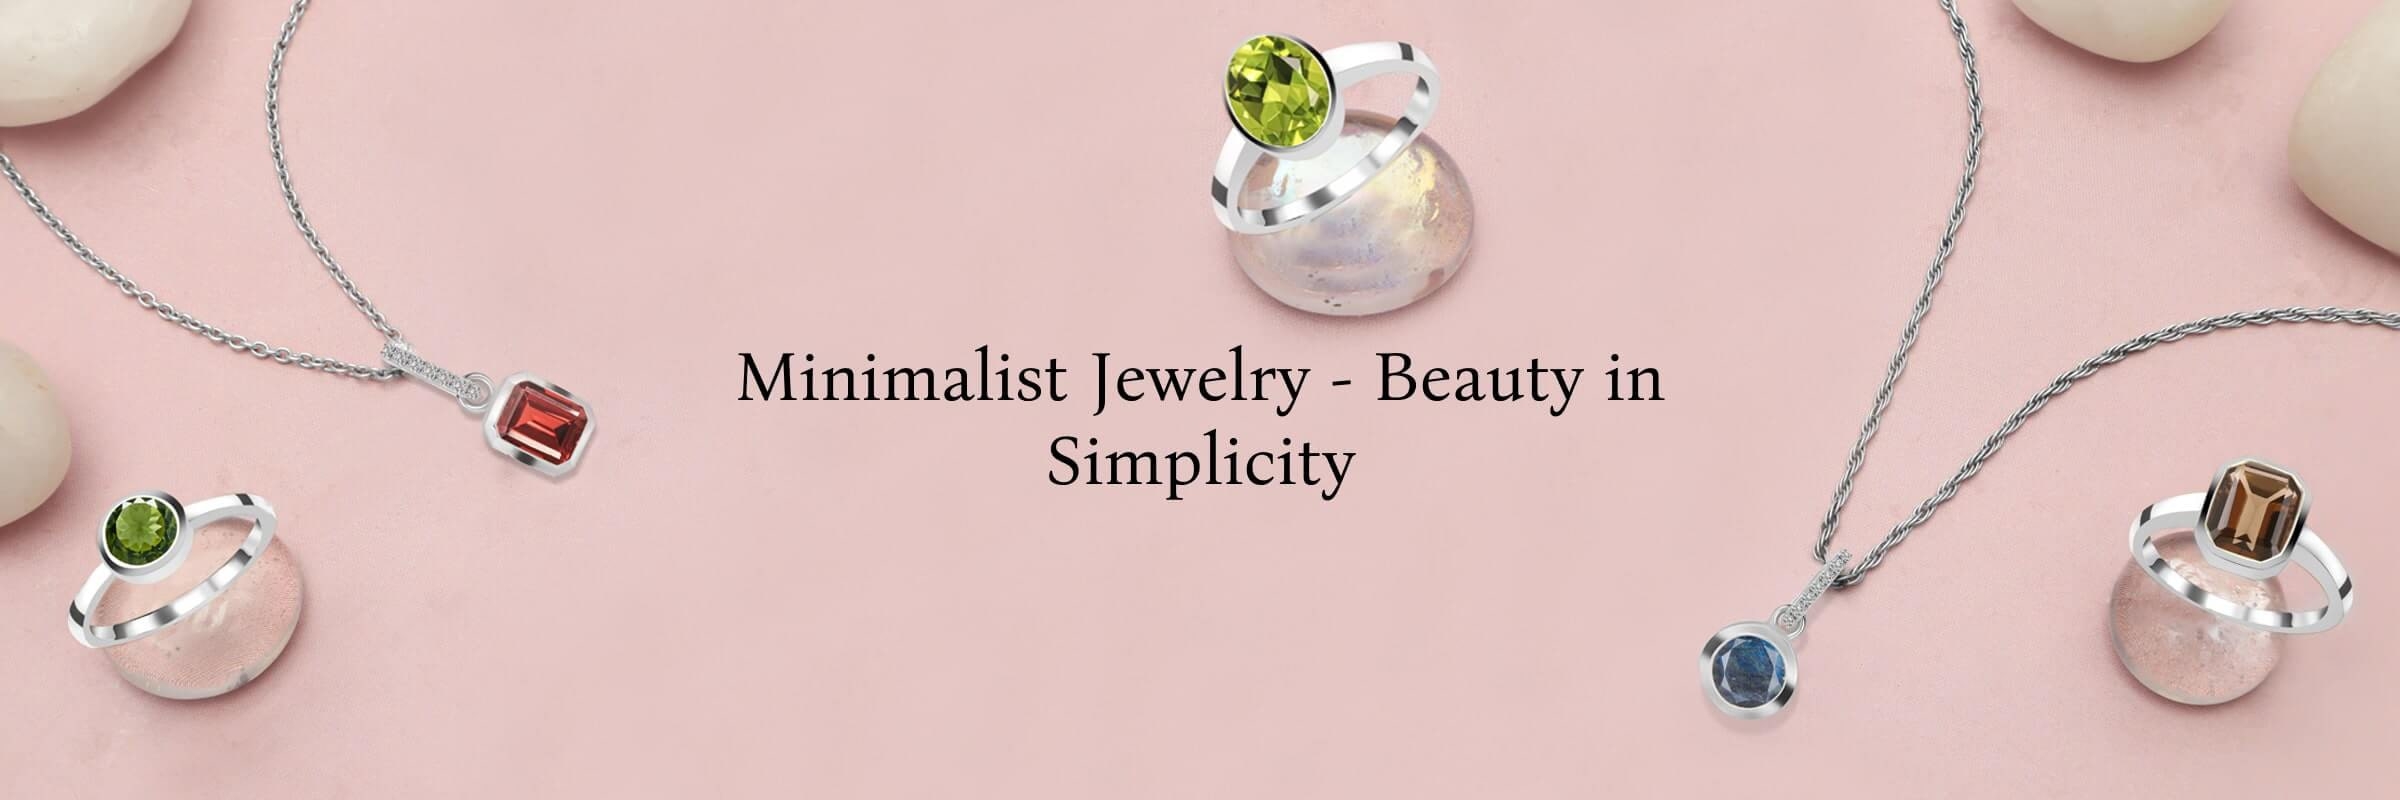 What is Minimalist Jewelry?